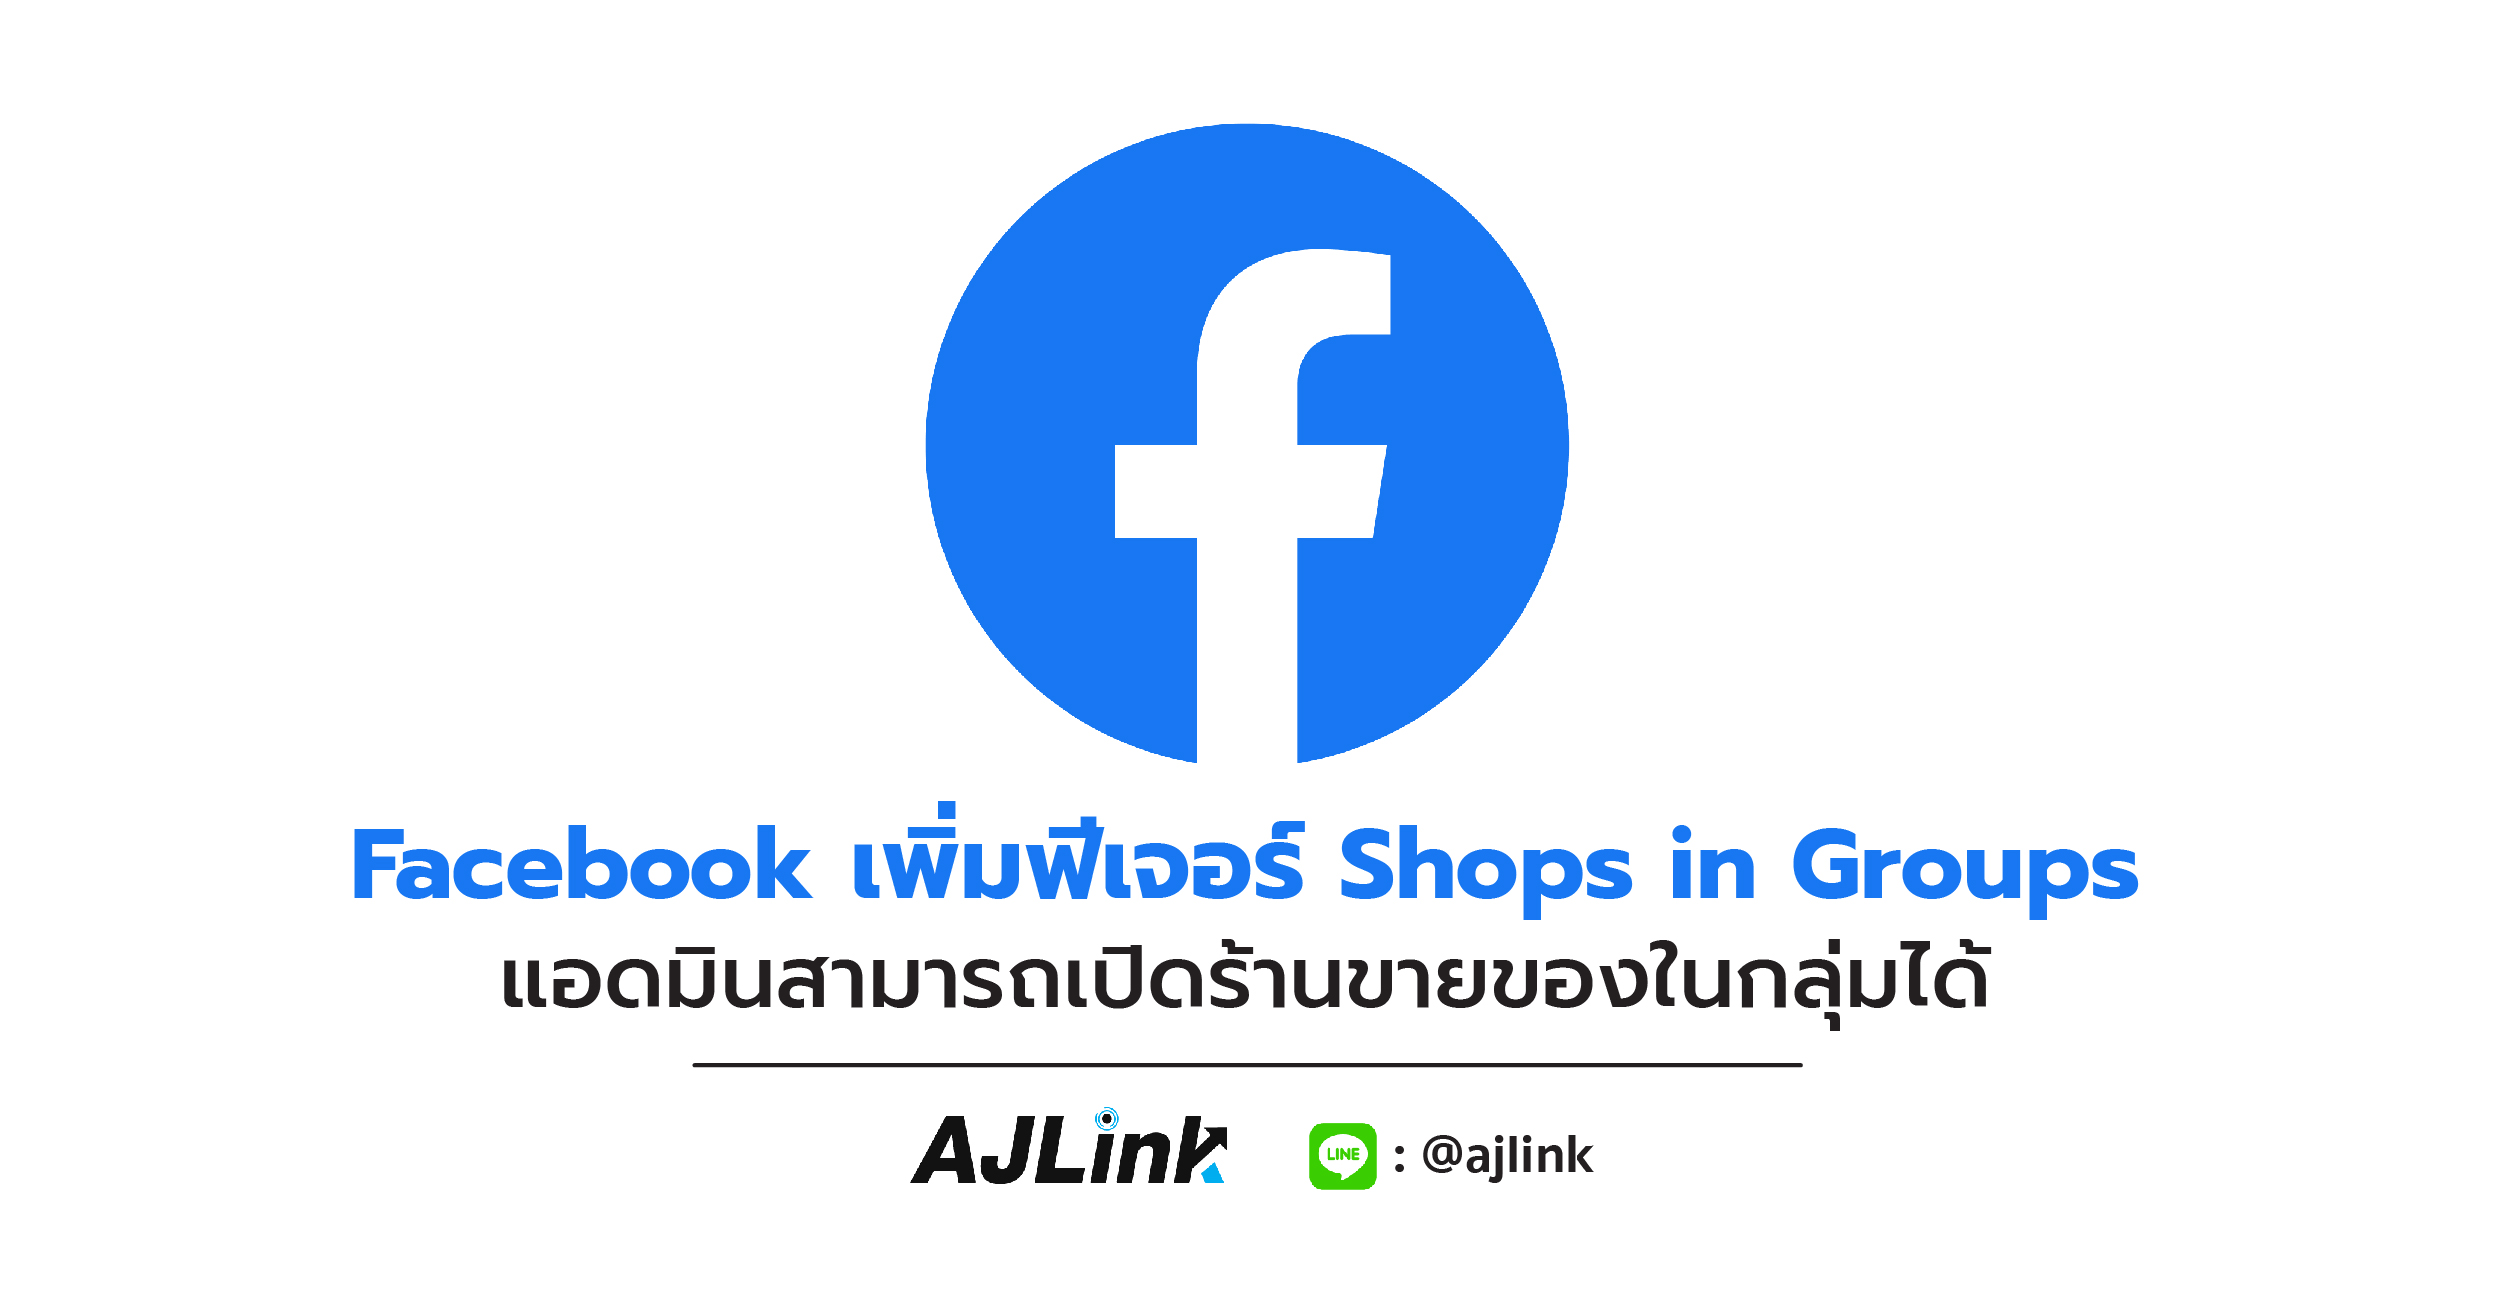 Facebook เพิ่มฟีเจอร์ Shops in Groups แอดมินสามารถเปิดร้านขายของในกลุ่มได้